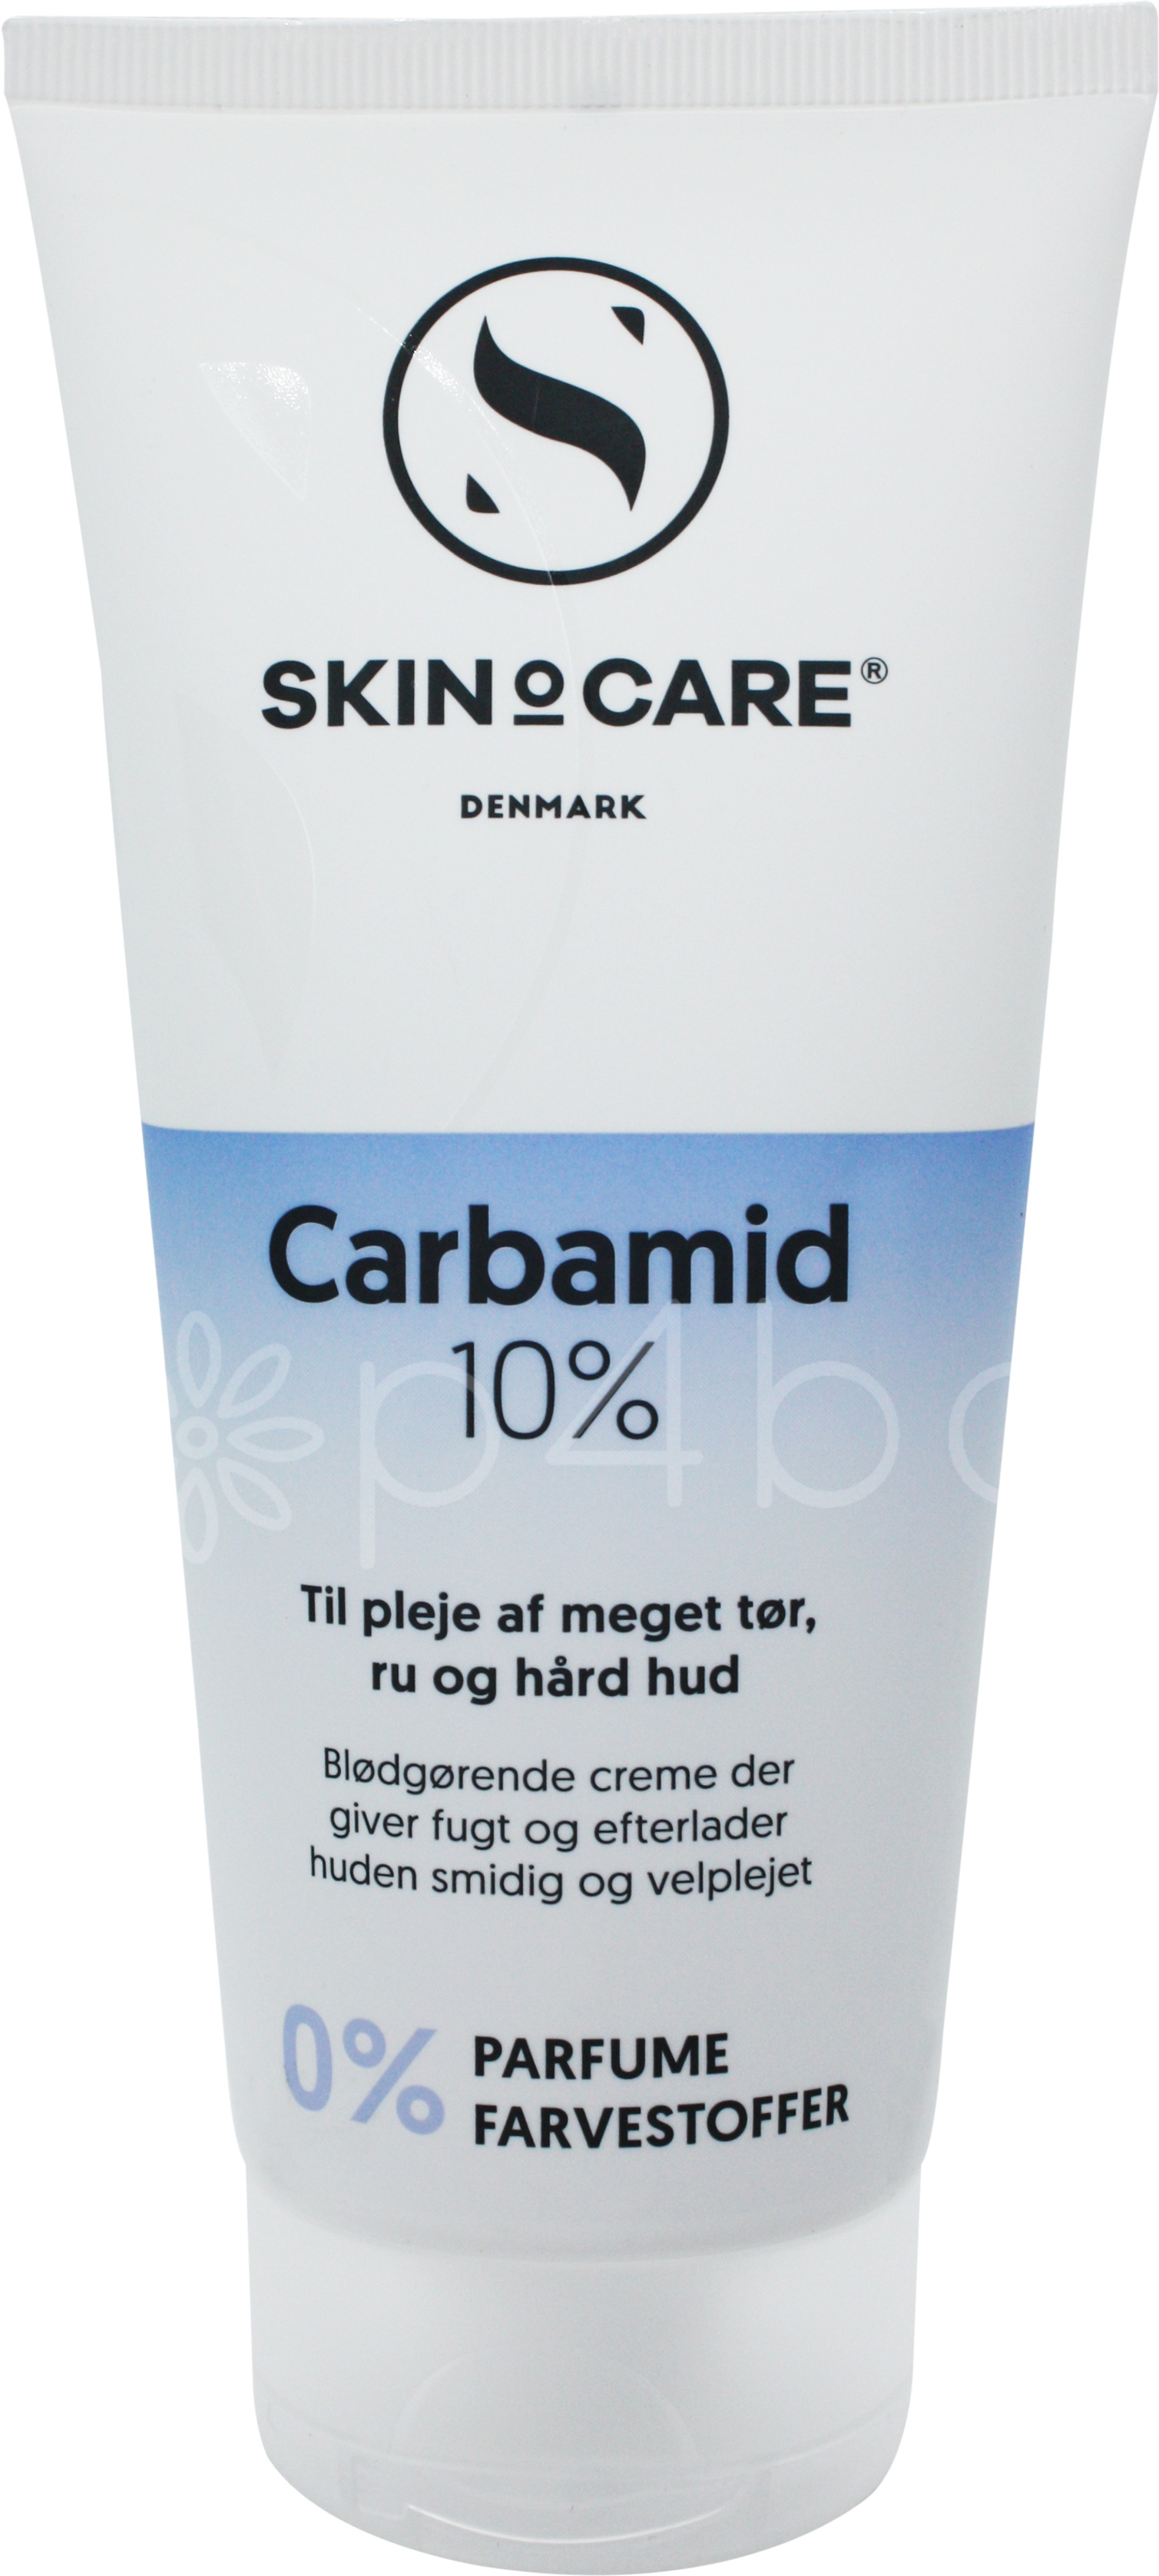 skinocare-carbamid-10-200-ml-.jpg